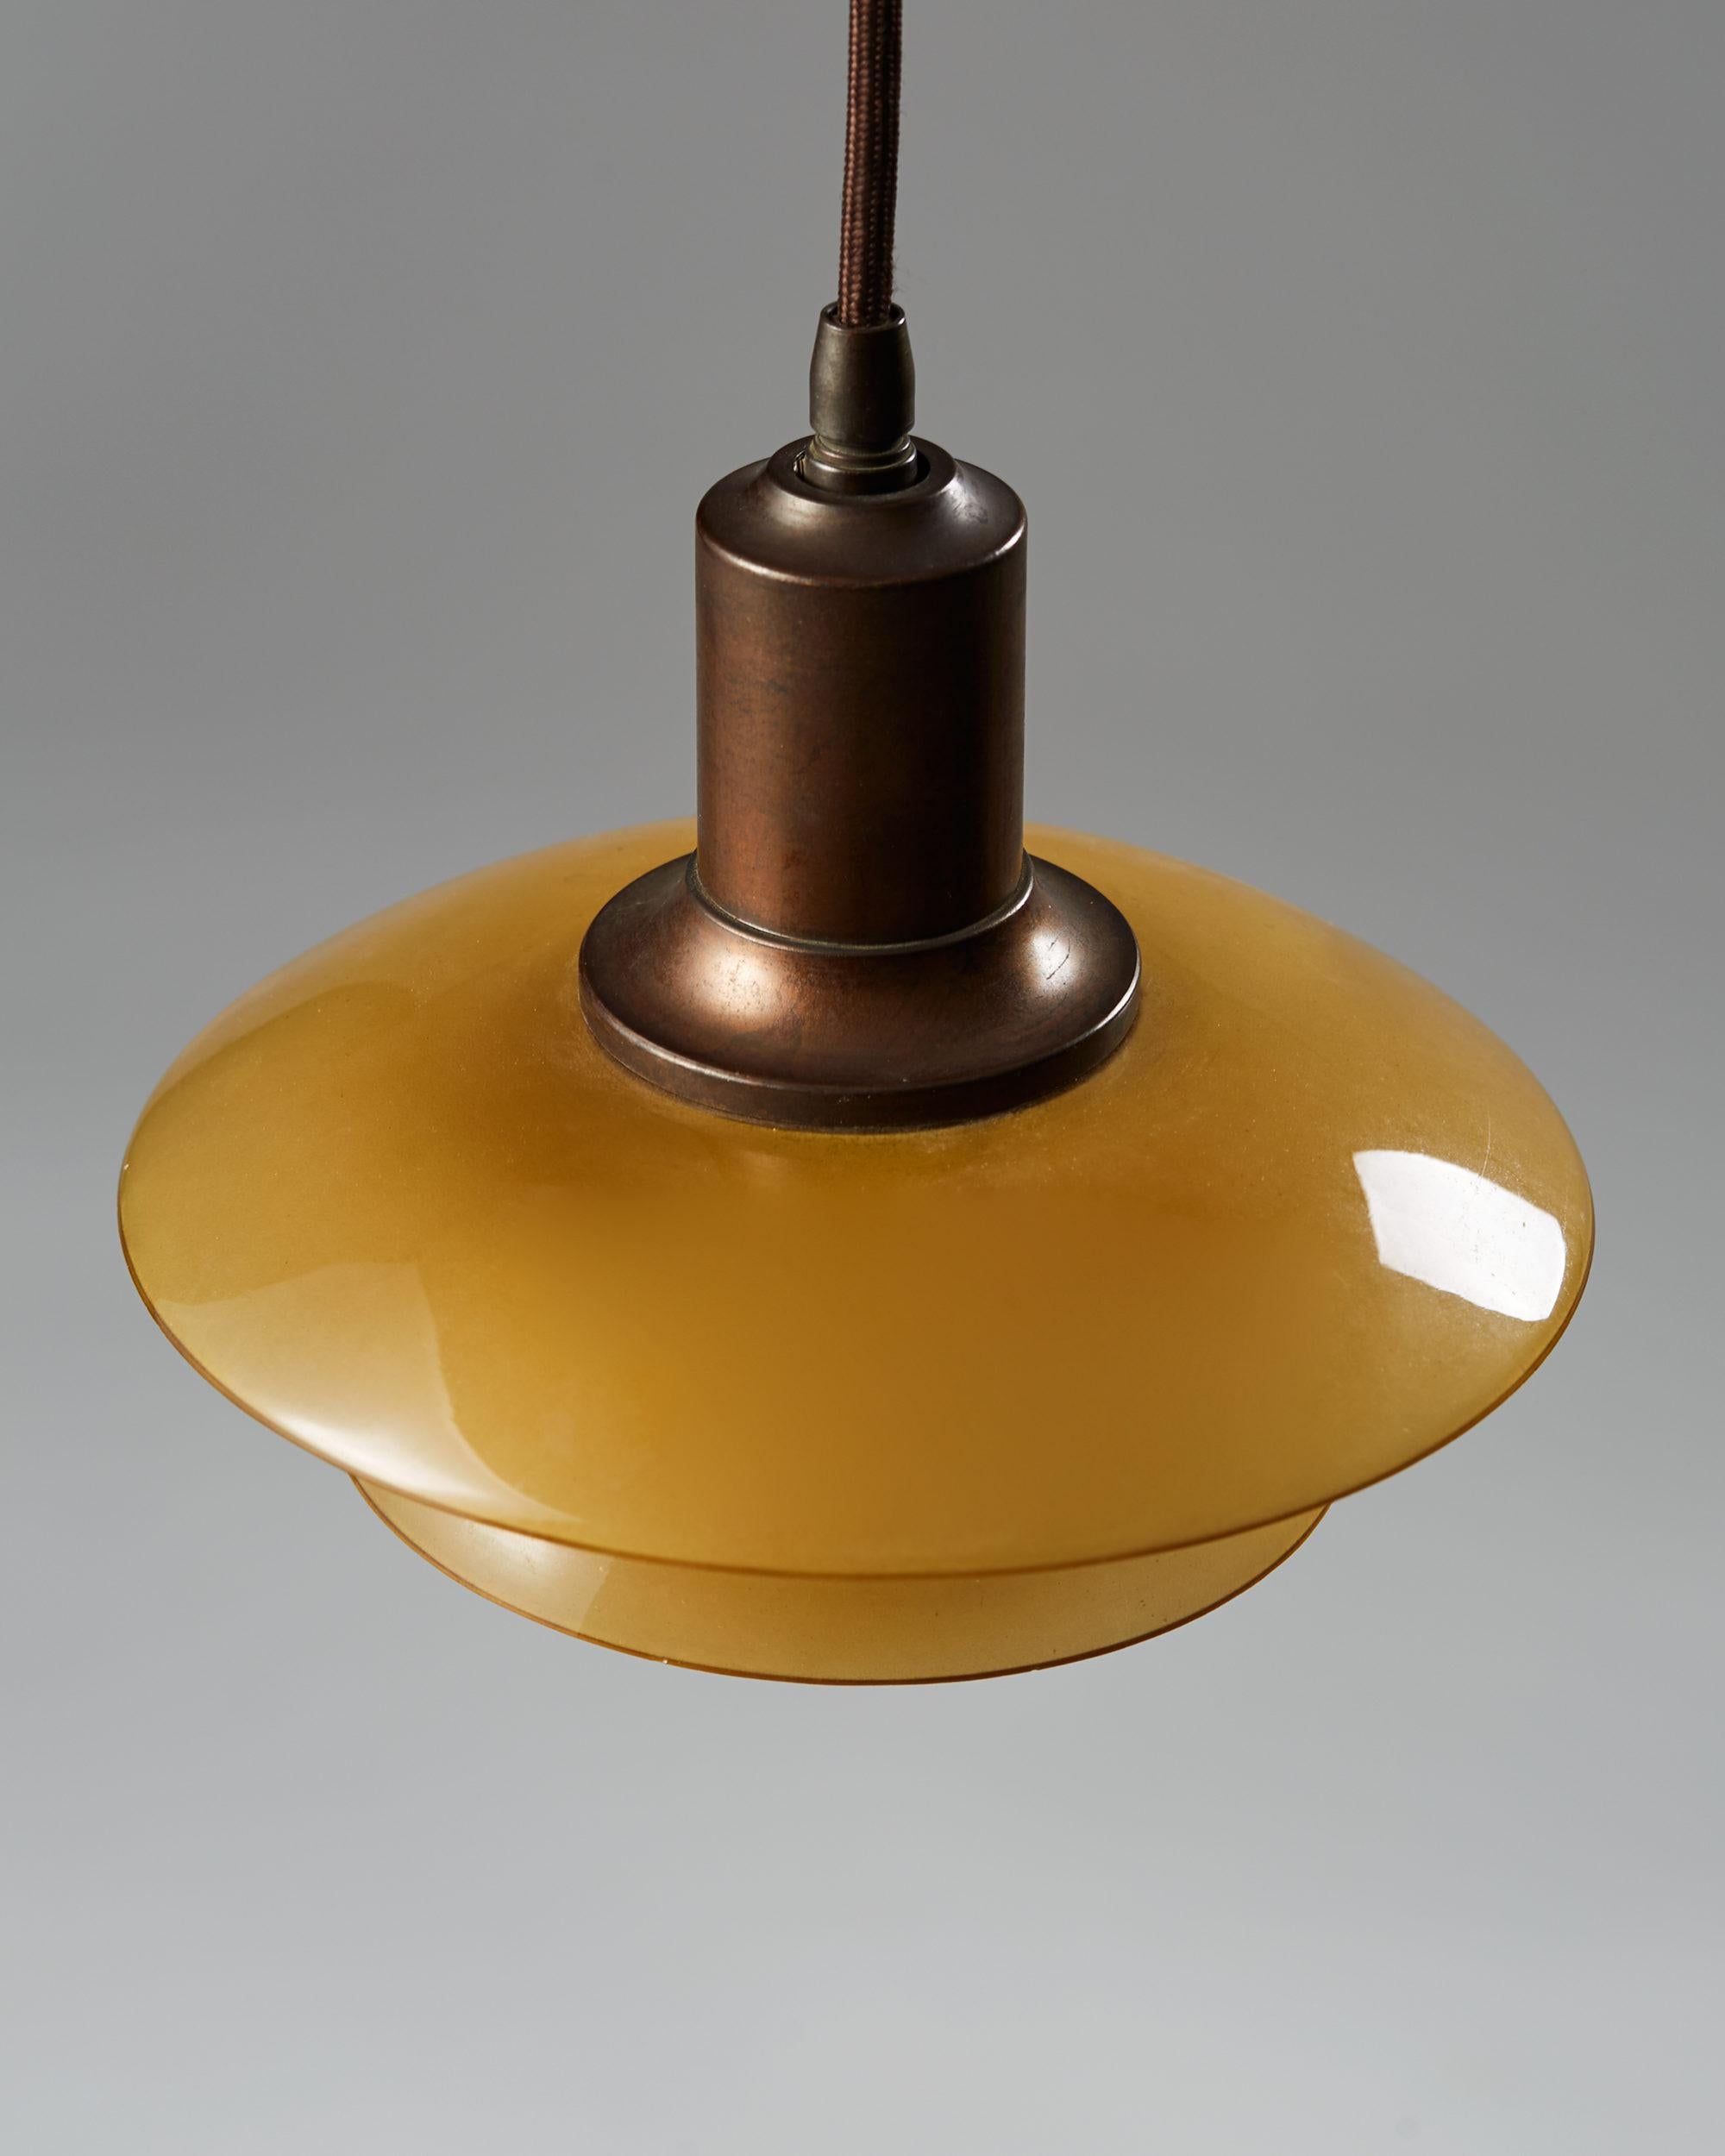 Scandinavian Modern Ceiling Lamp PH 2/1 Designed by Poul Henningsen for Louis Poulsen, Denmark, 1930